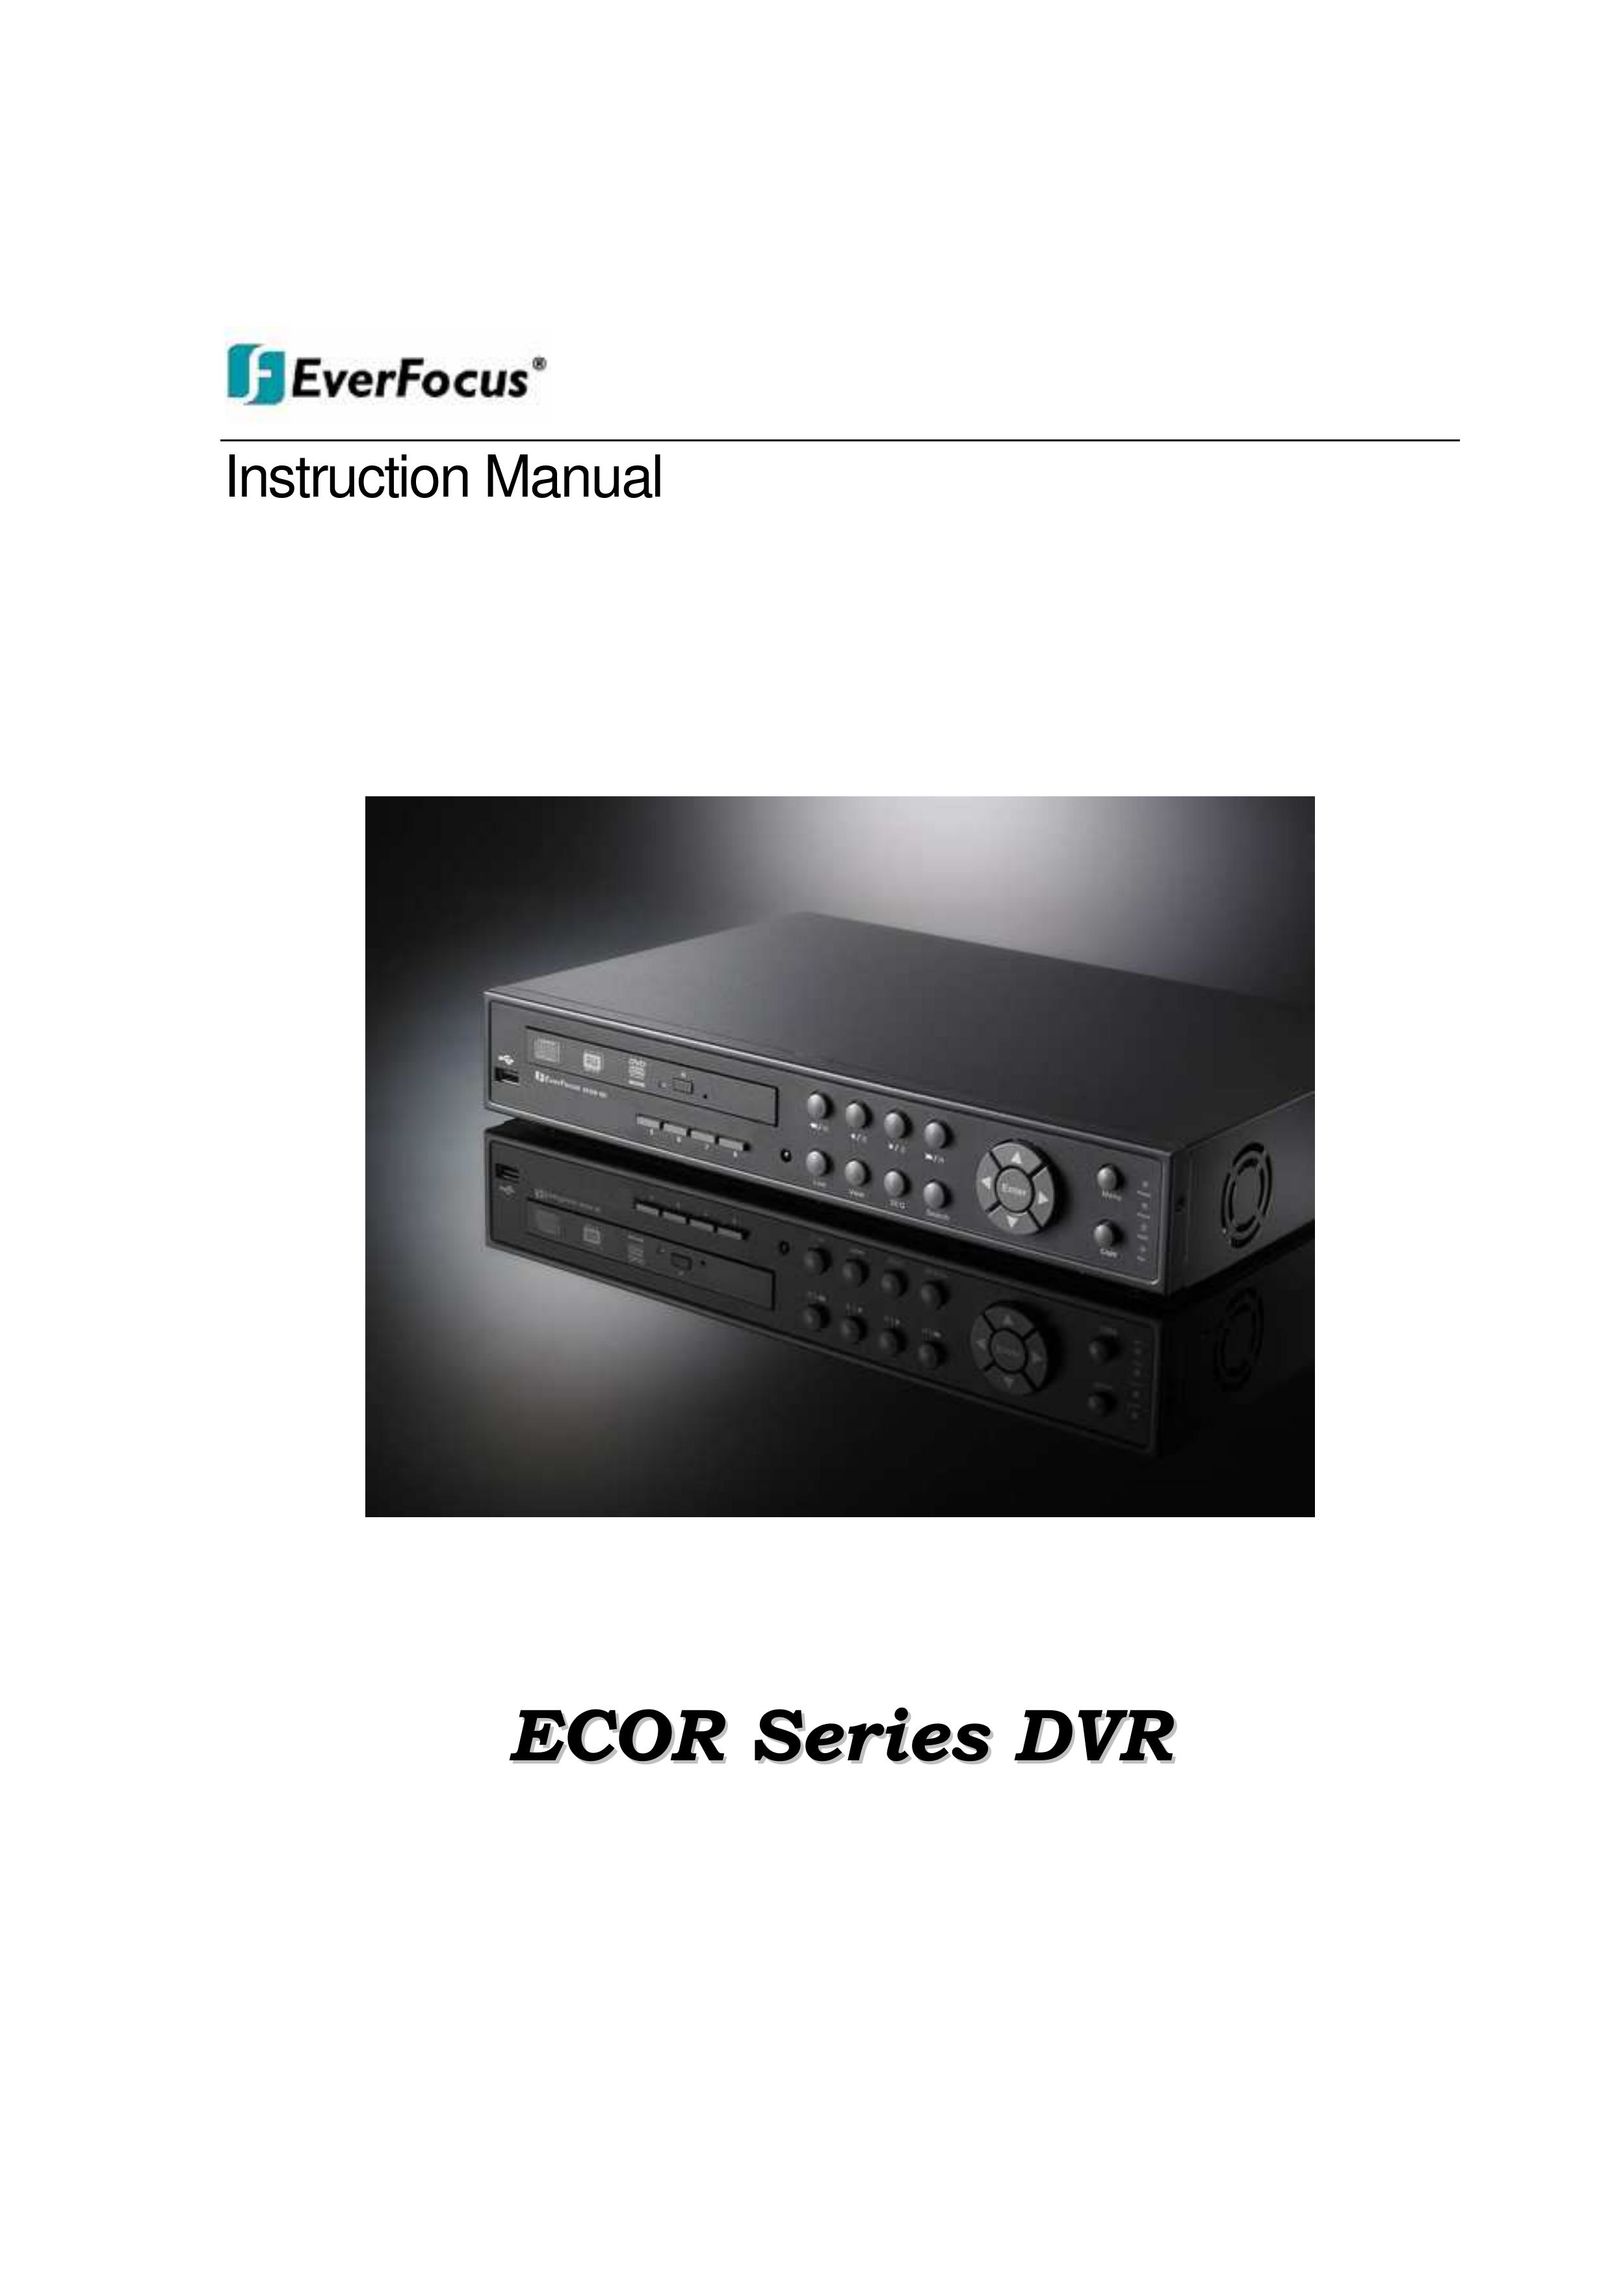 EverFocus ECOR 4 DVR User Manual